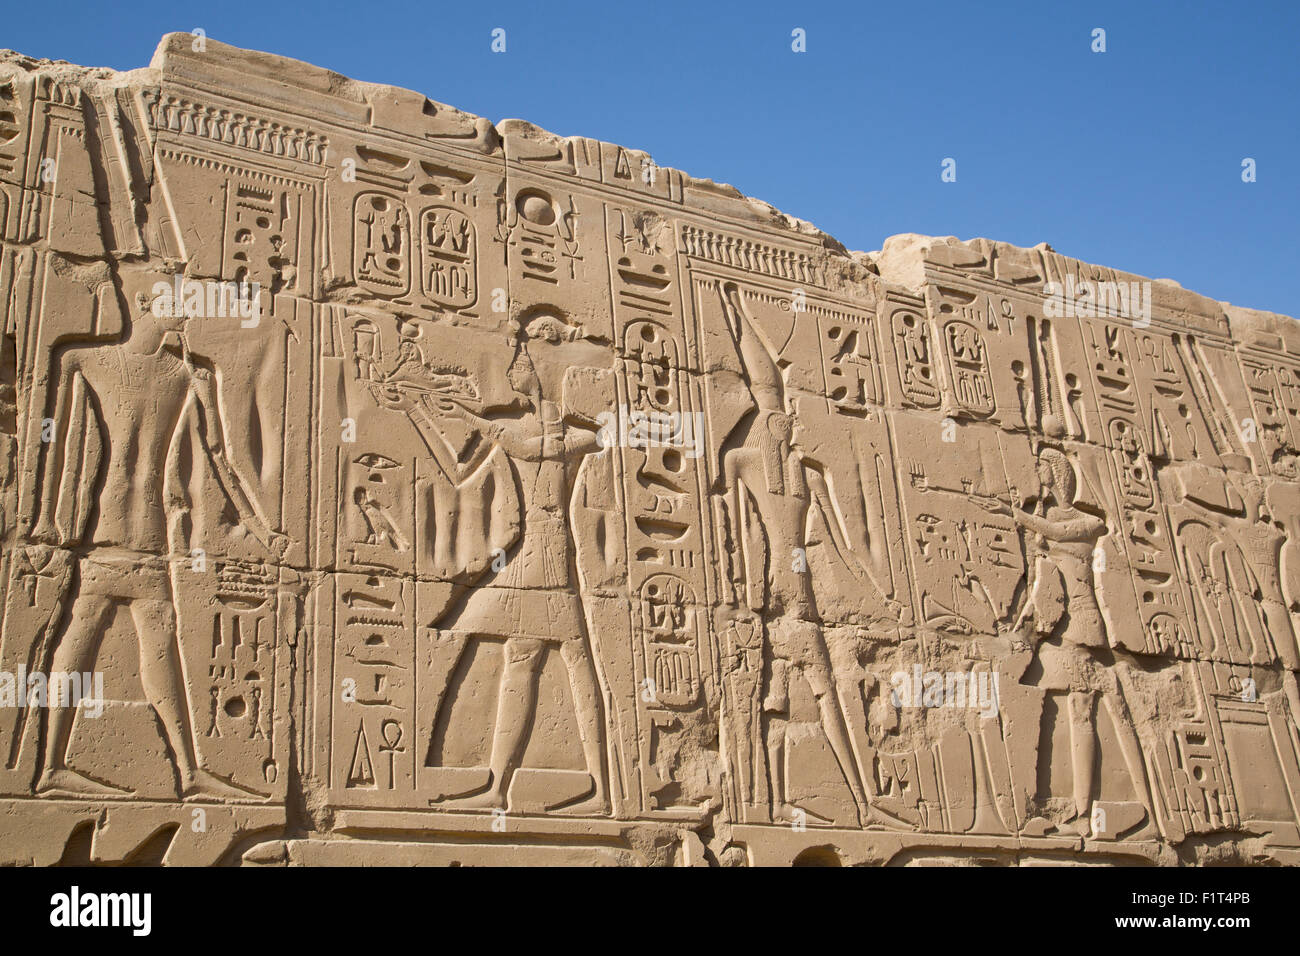 Basrelief von Pharaonen und Götter, Karnak Tempel, Luxor, Theben, UNESCO World Heritage Site, Ägypten, Nordafrika, Afrika Stockfoto